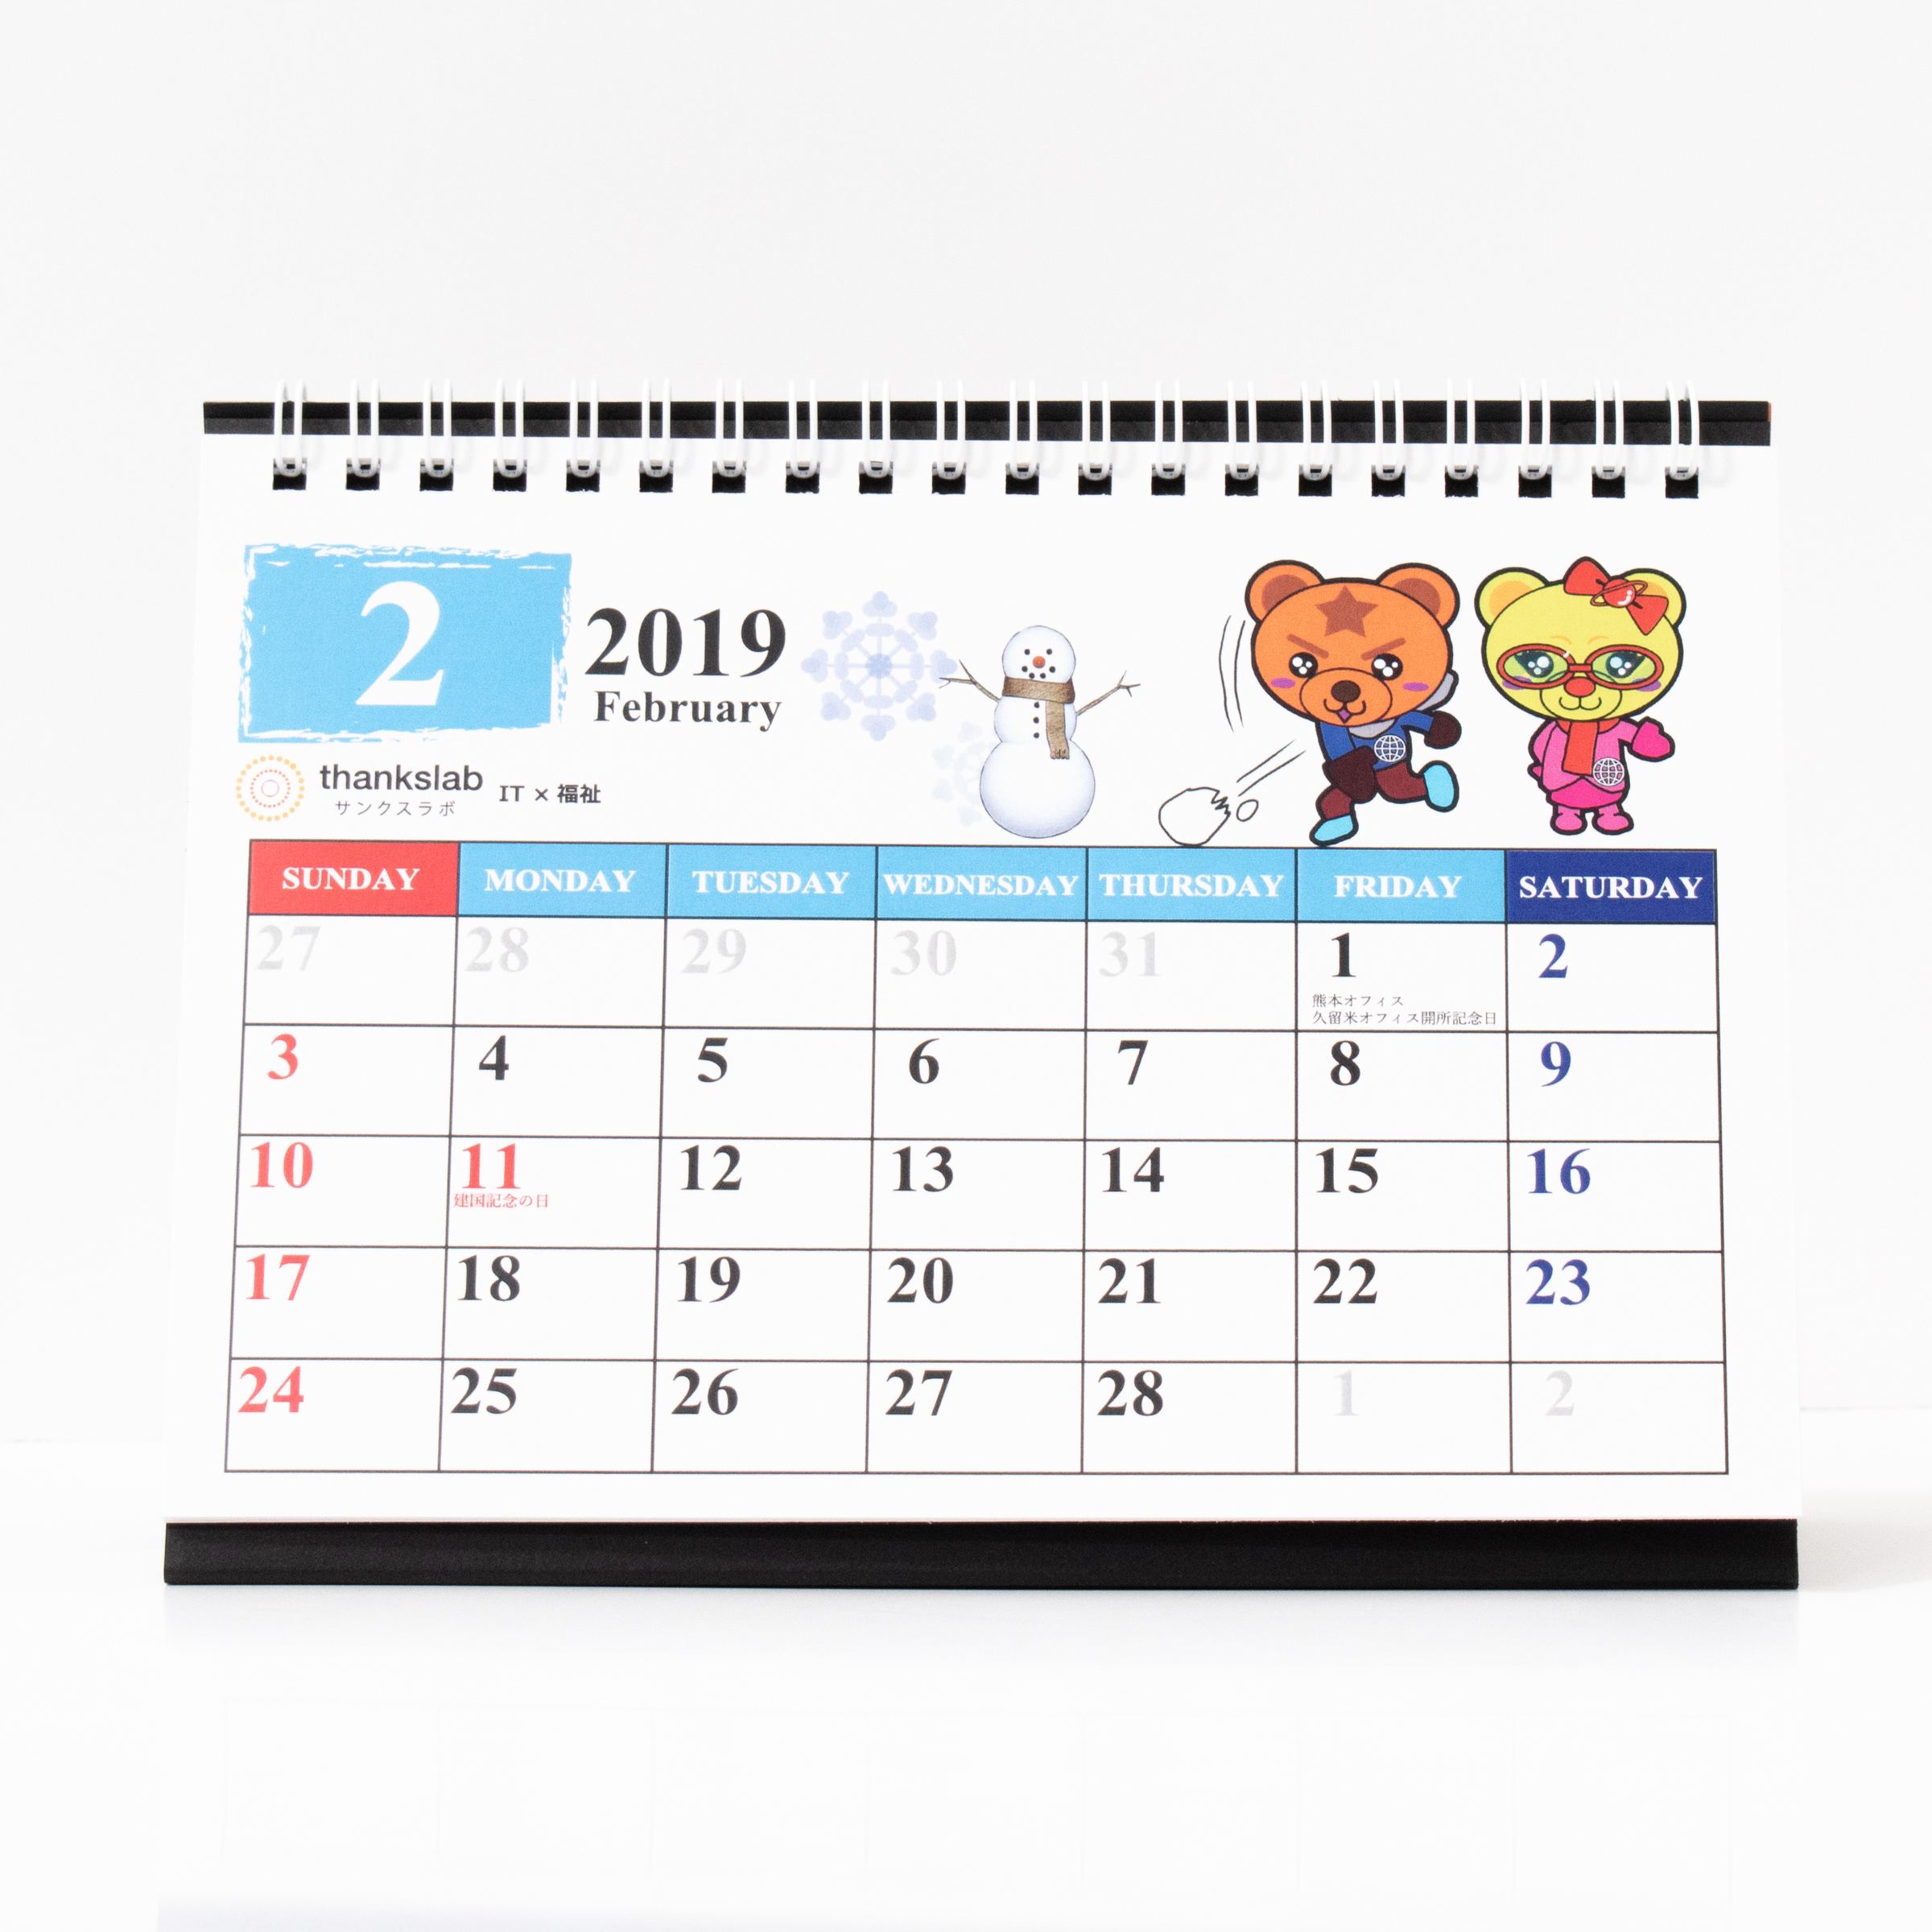 「サンクスラボ株式会社 様」製作のオリジナルカレンダー ギャラリー写真1